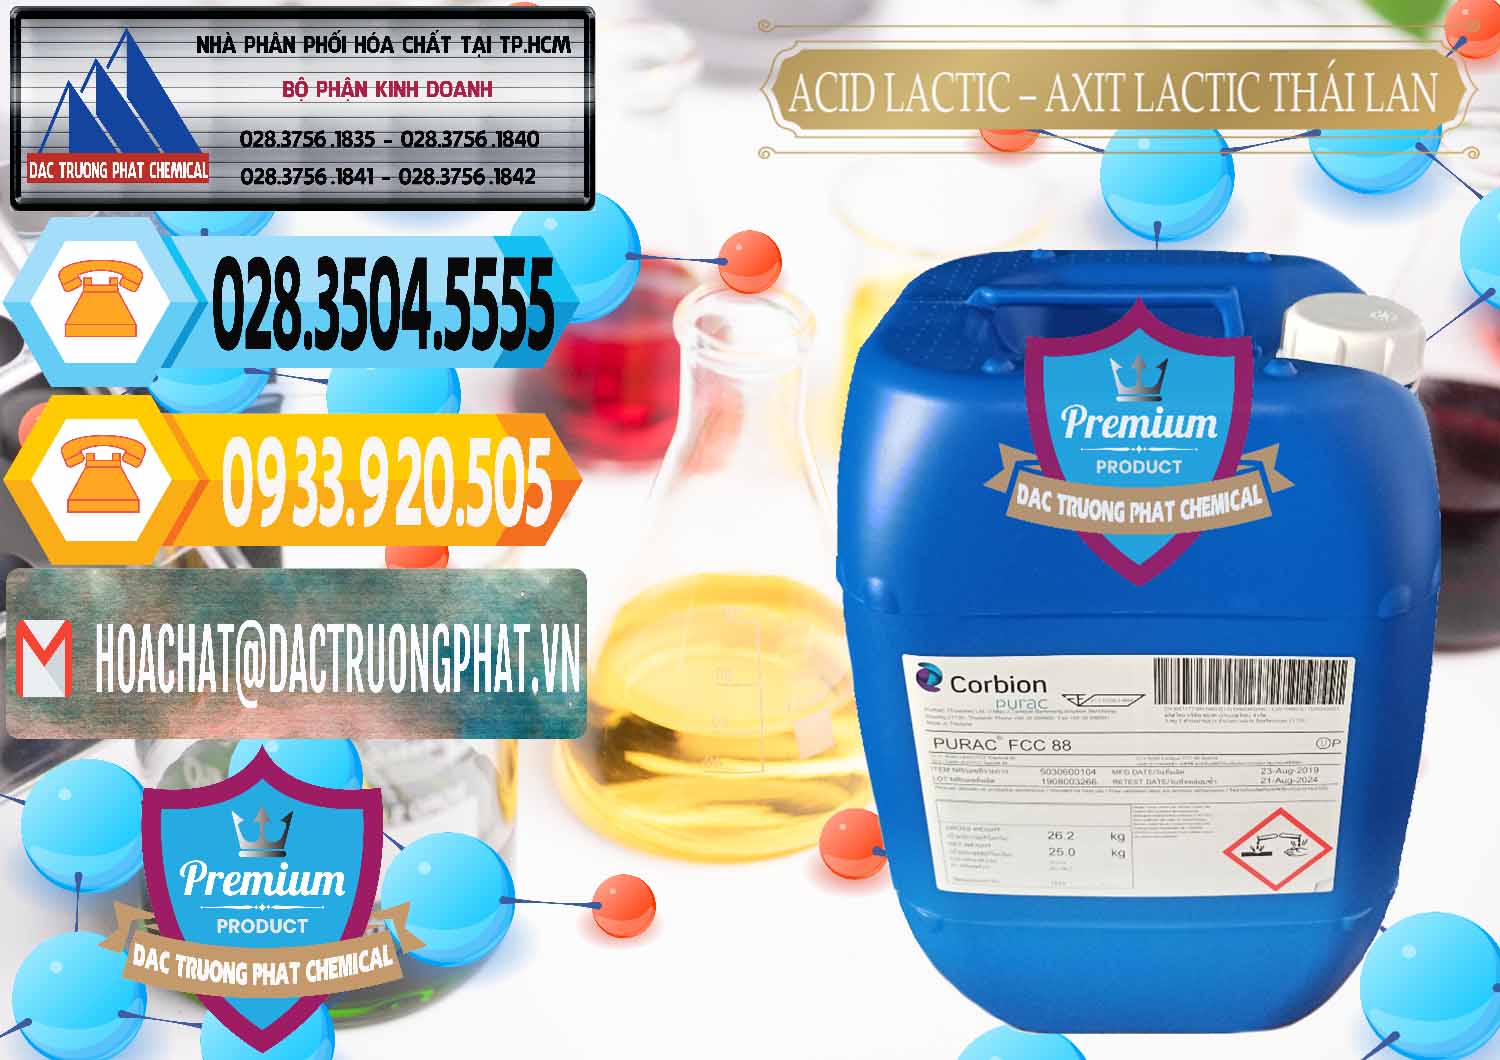 Nhà nhập khẩu và bán Acid Lactic – Axit Lactic Thái Lan Purac FCC 88 - 0012 - Đơn vị kinh doanh - phân phối hóa chất tại TP.HCM - hoachattayrua.net